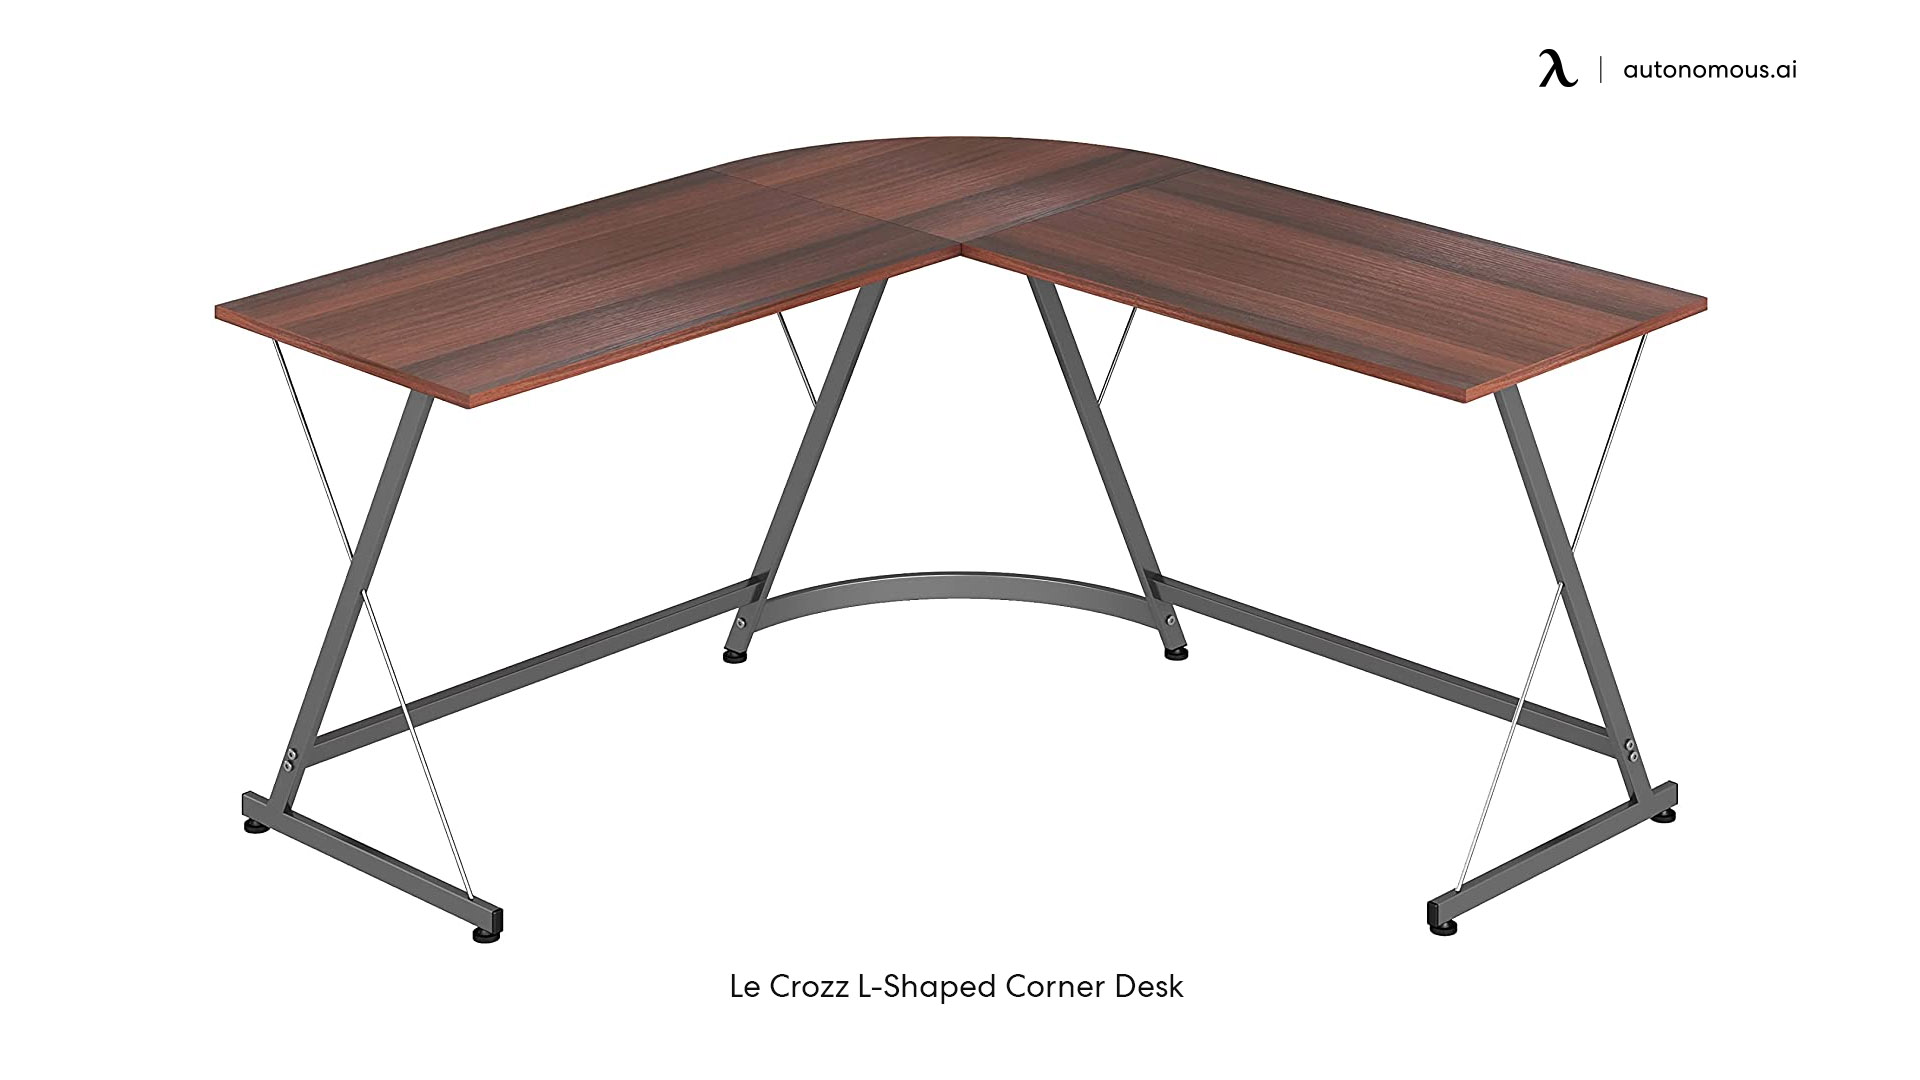 Le Crozz L-Shaped Corner Desk